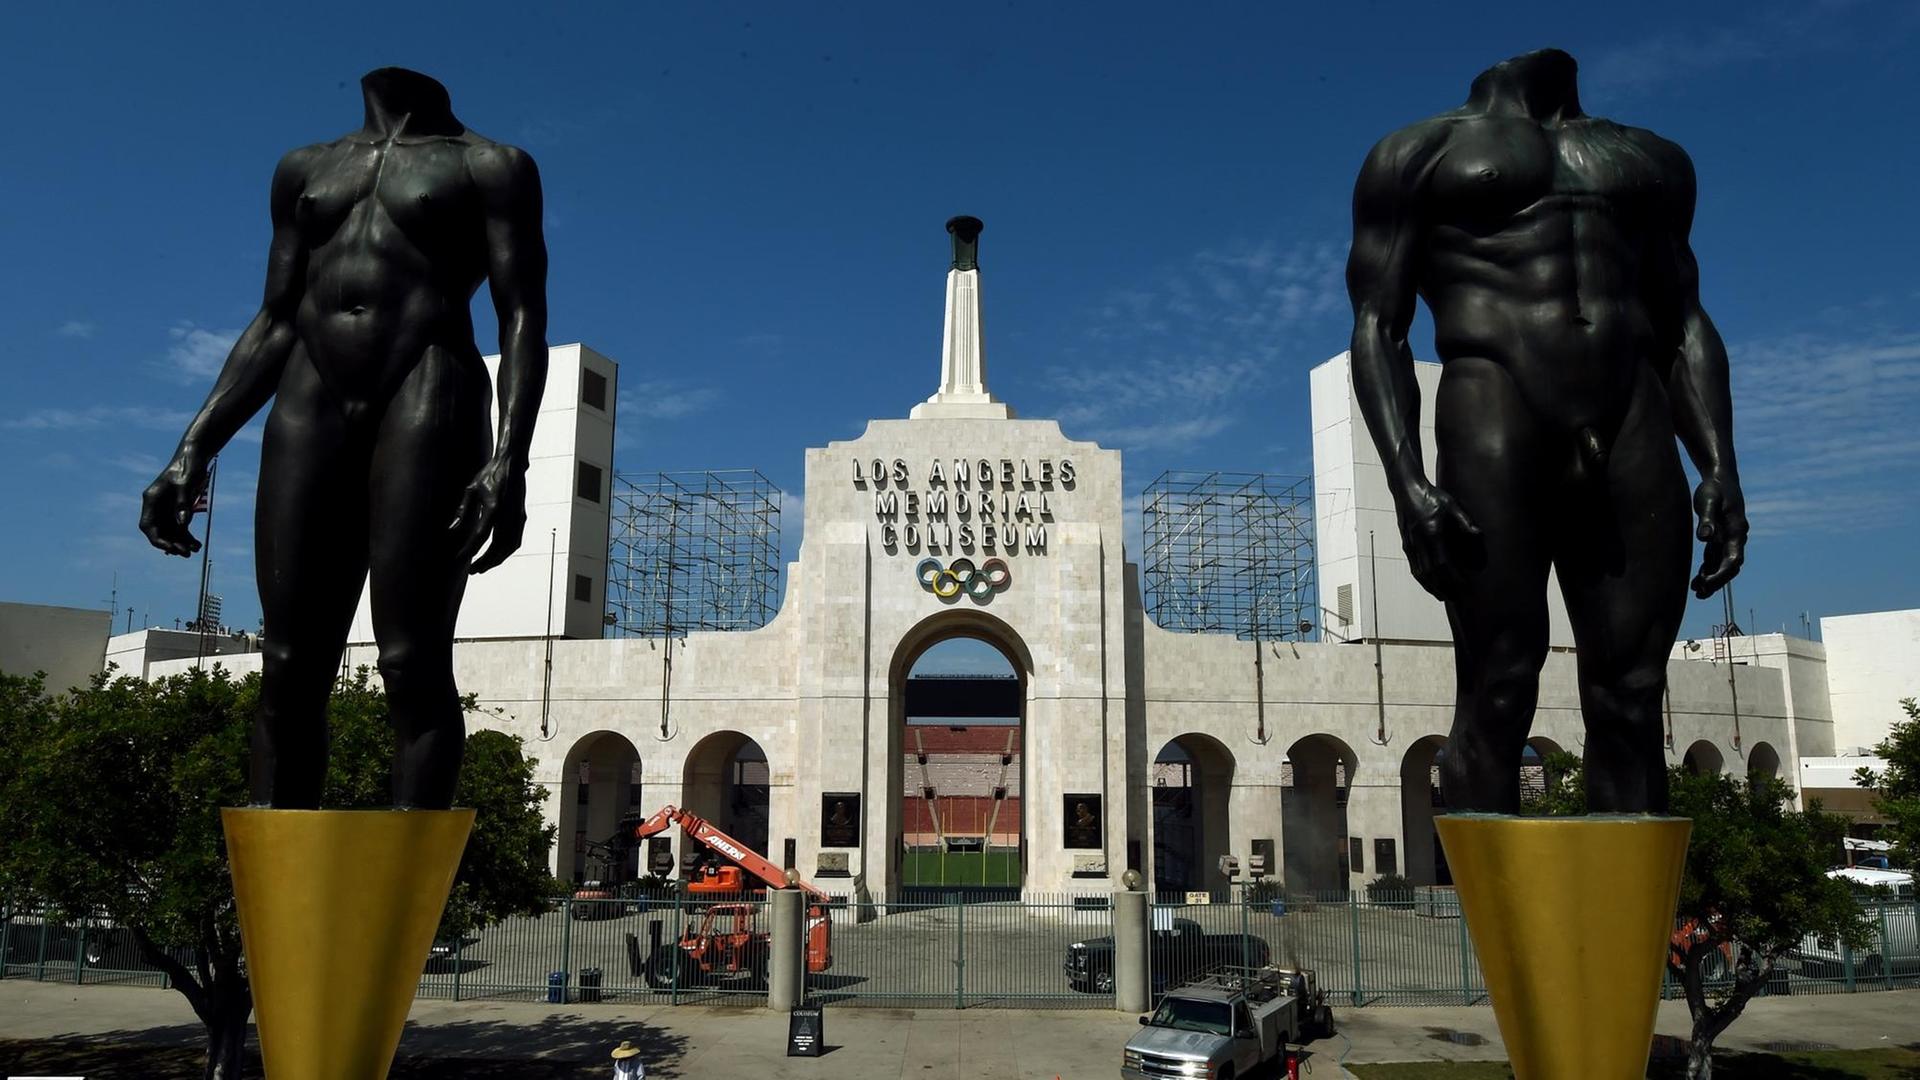 Zu sehen ist das "Memorial Coliseum", das ist der Name für ein Stadion in Los Angeles. Dort waren schon Olympische Spiele 1932 und 1984.